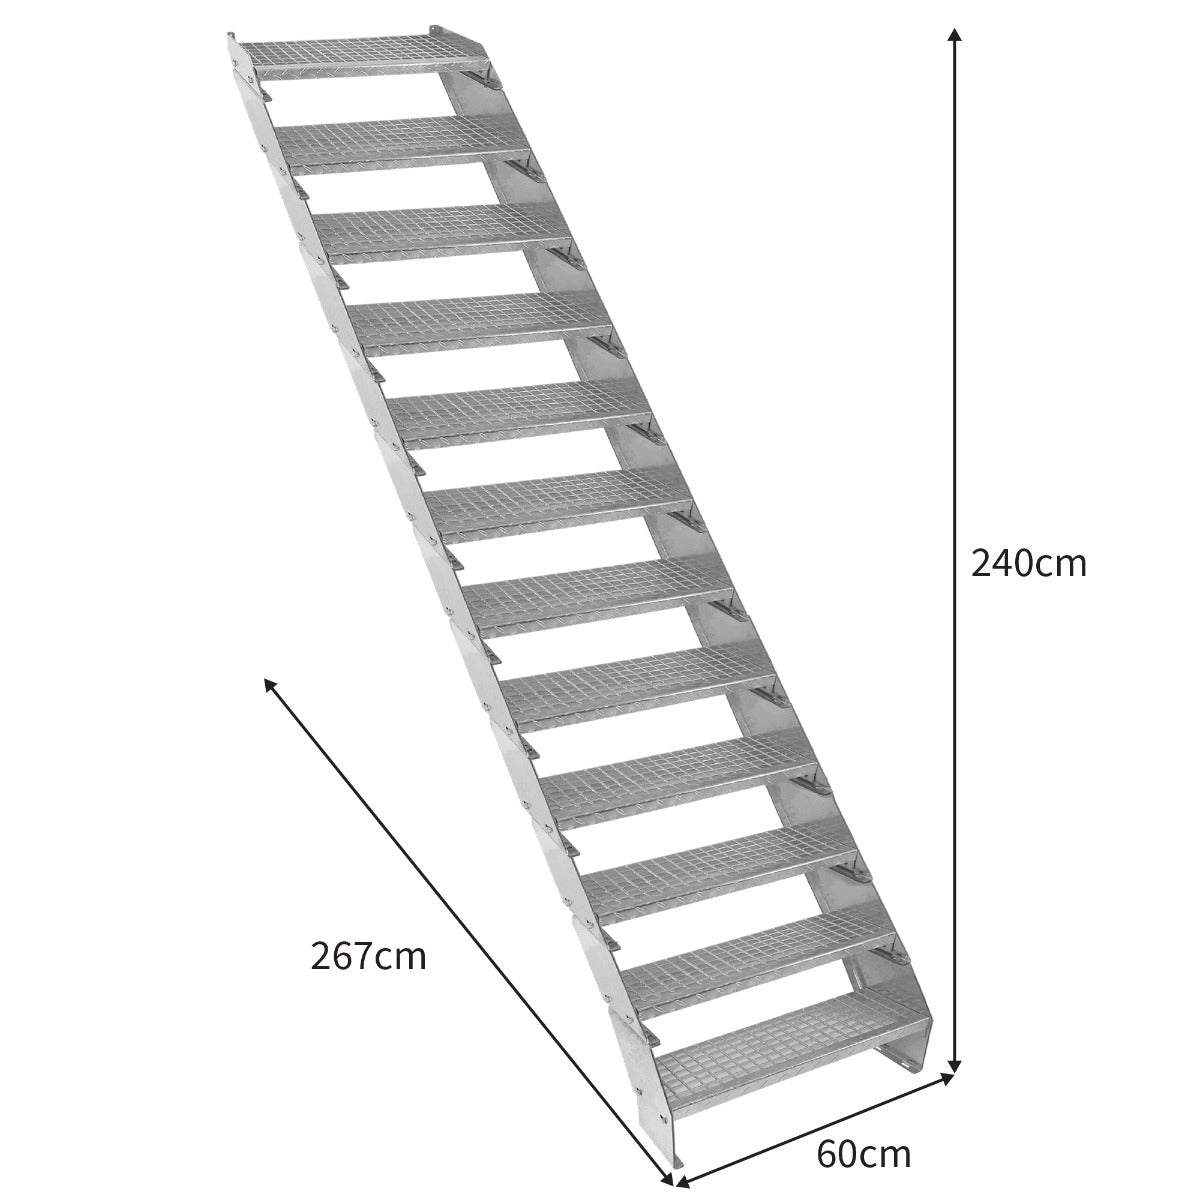 Escalera Galvanizada Ajustable de 12 Escalones– 600mm de Ancho